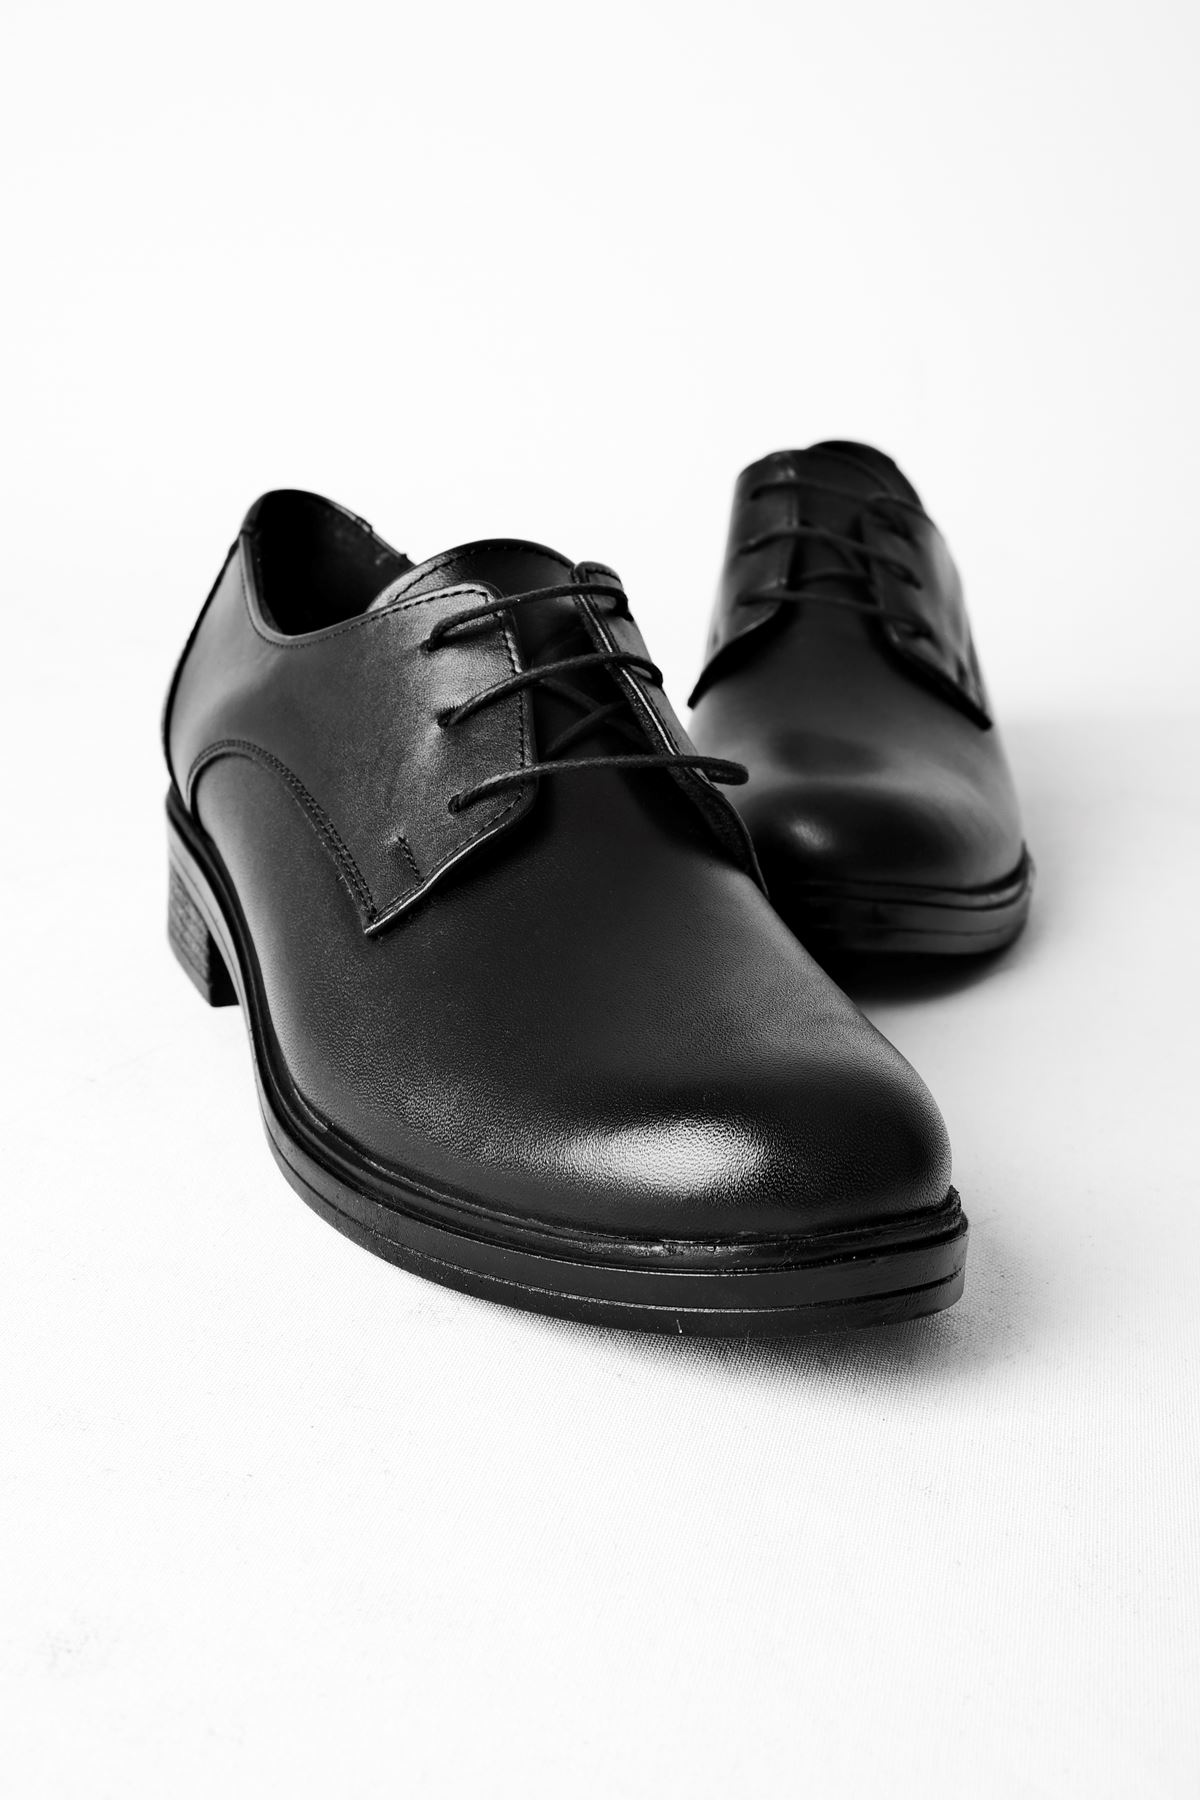 Gresa Kadın Klasik ayakkabı Bağcık Detay-siyah